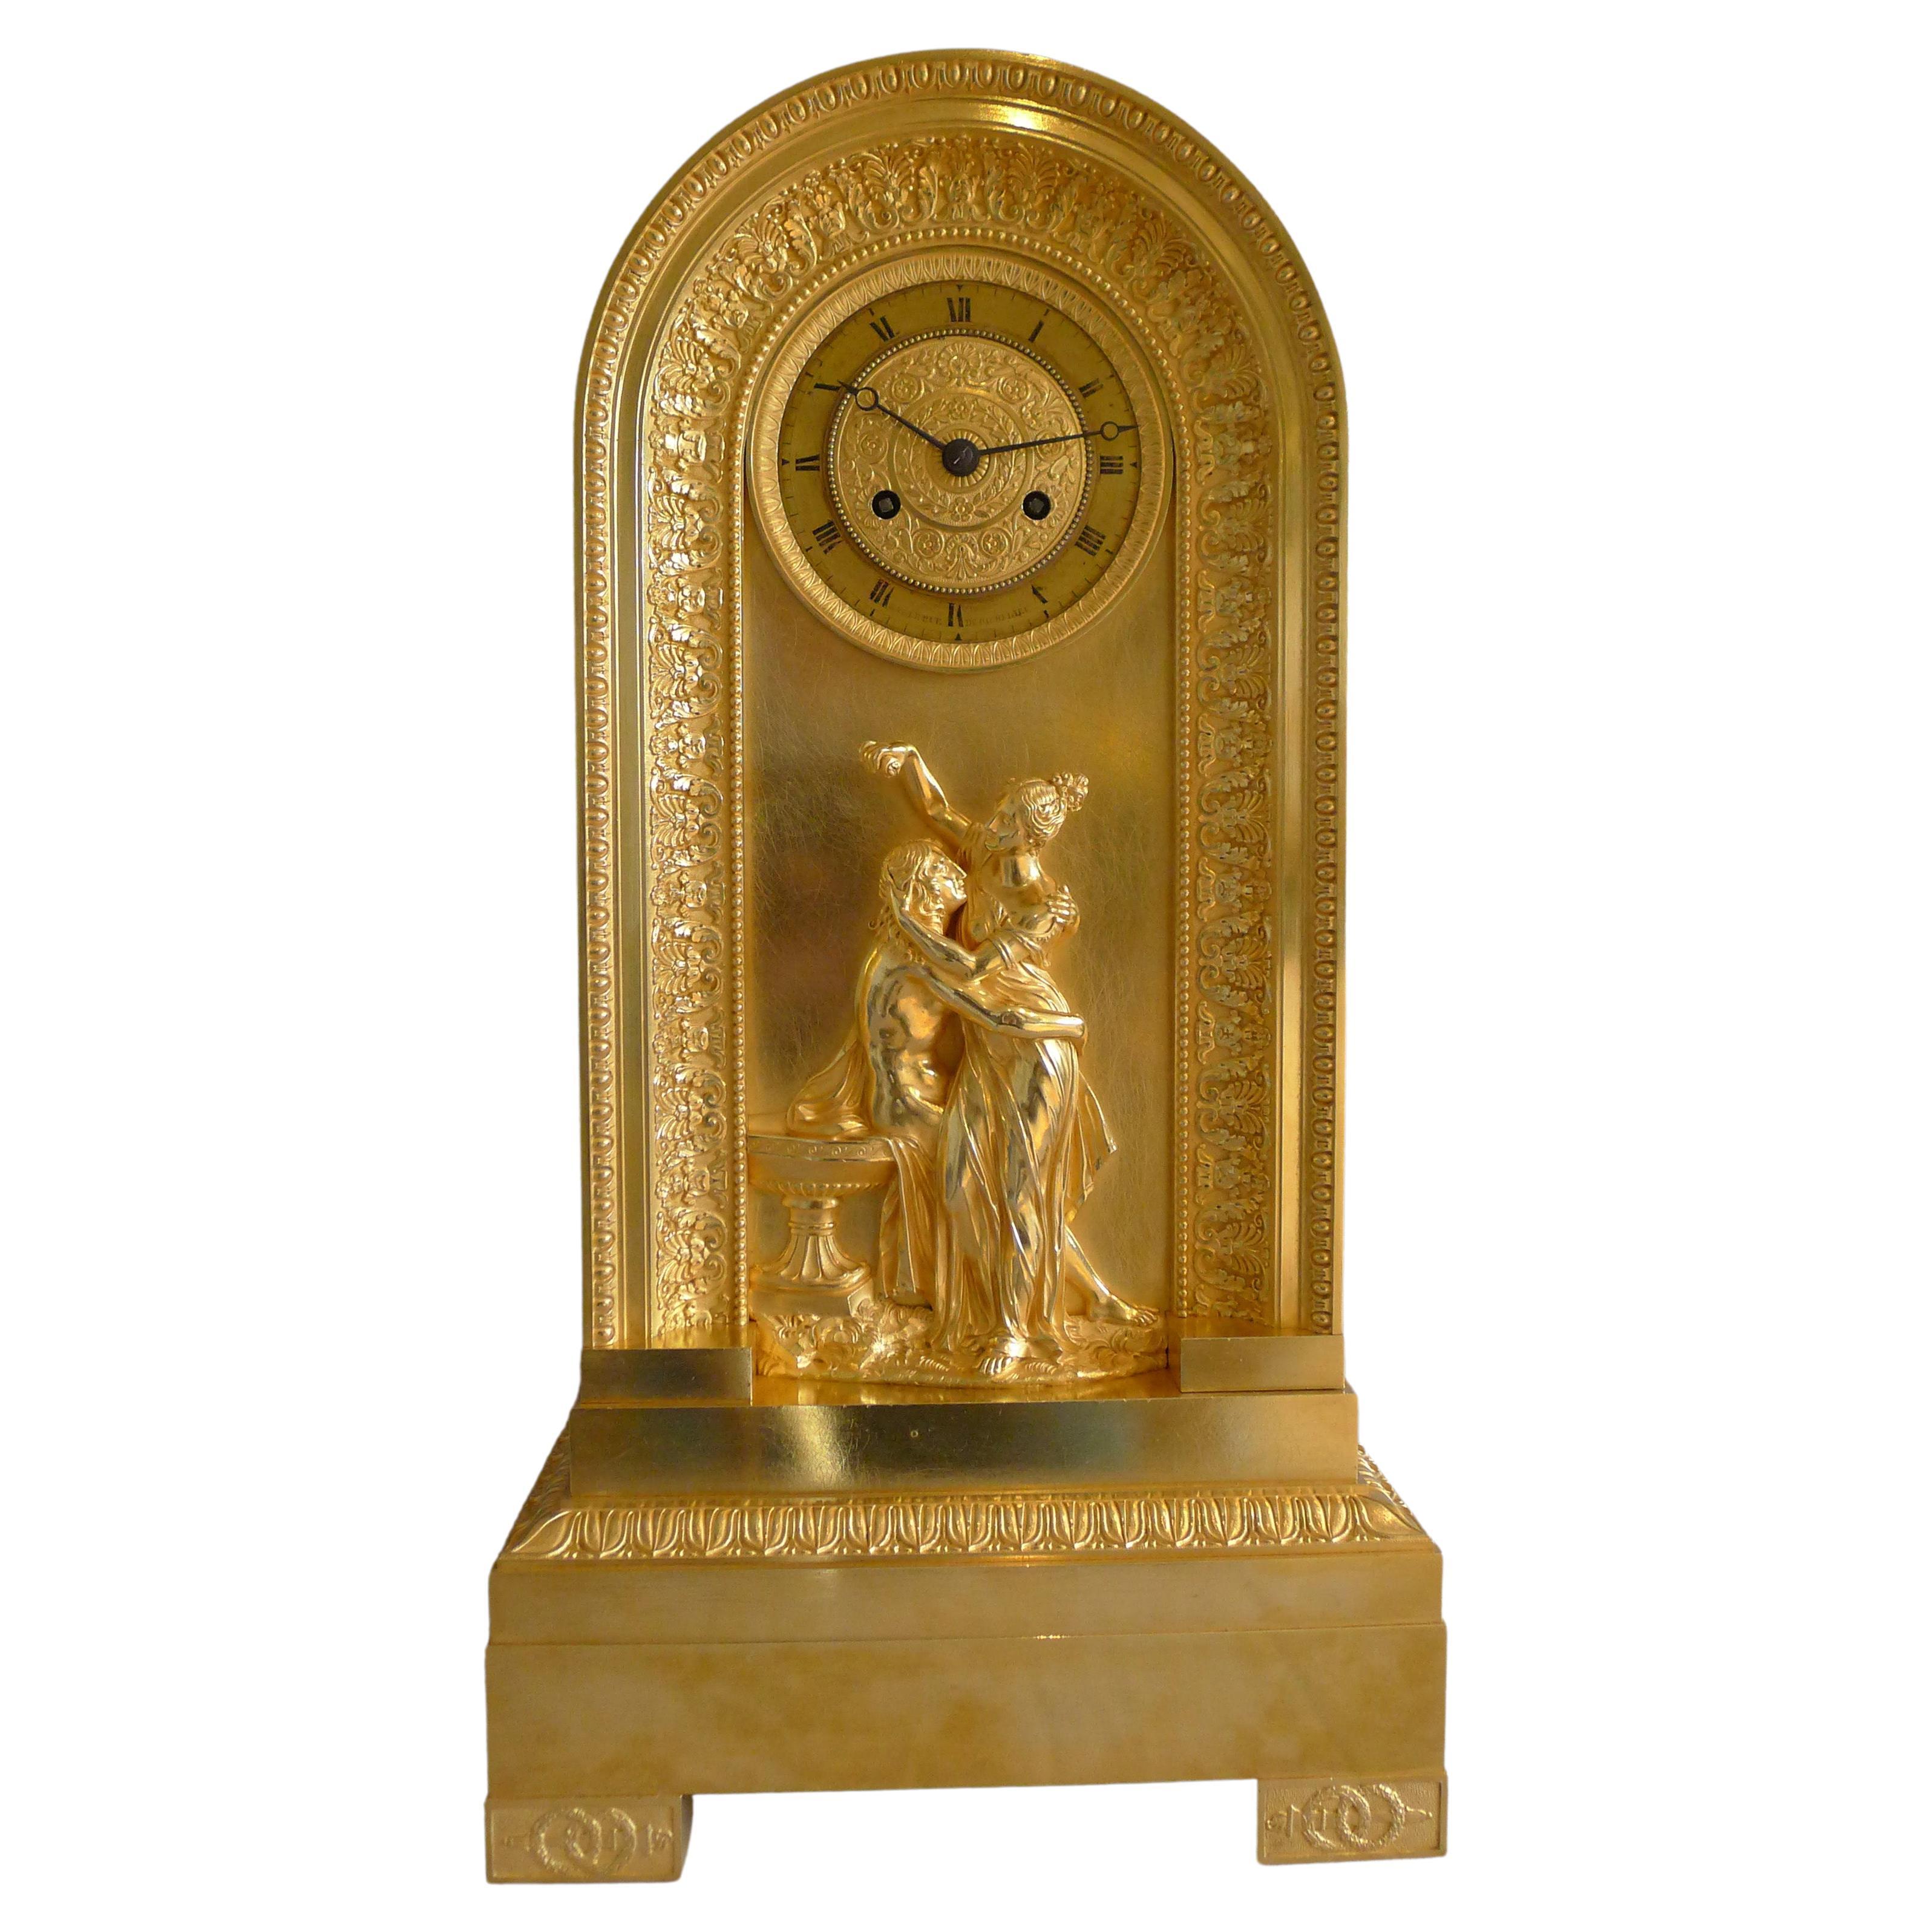 Goldbronze-Uhr des französischen Kaiserreichs in geborener Form und von Hero und Leander